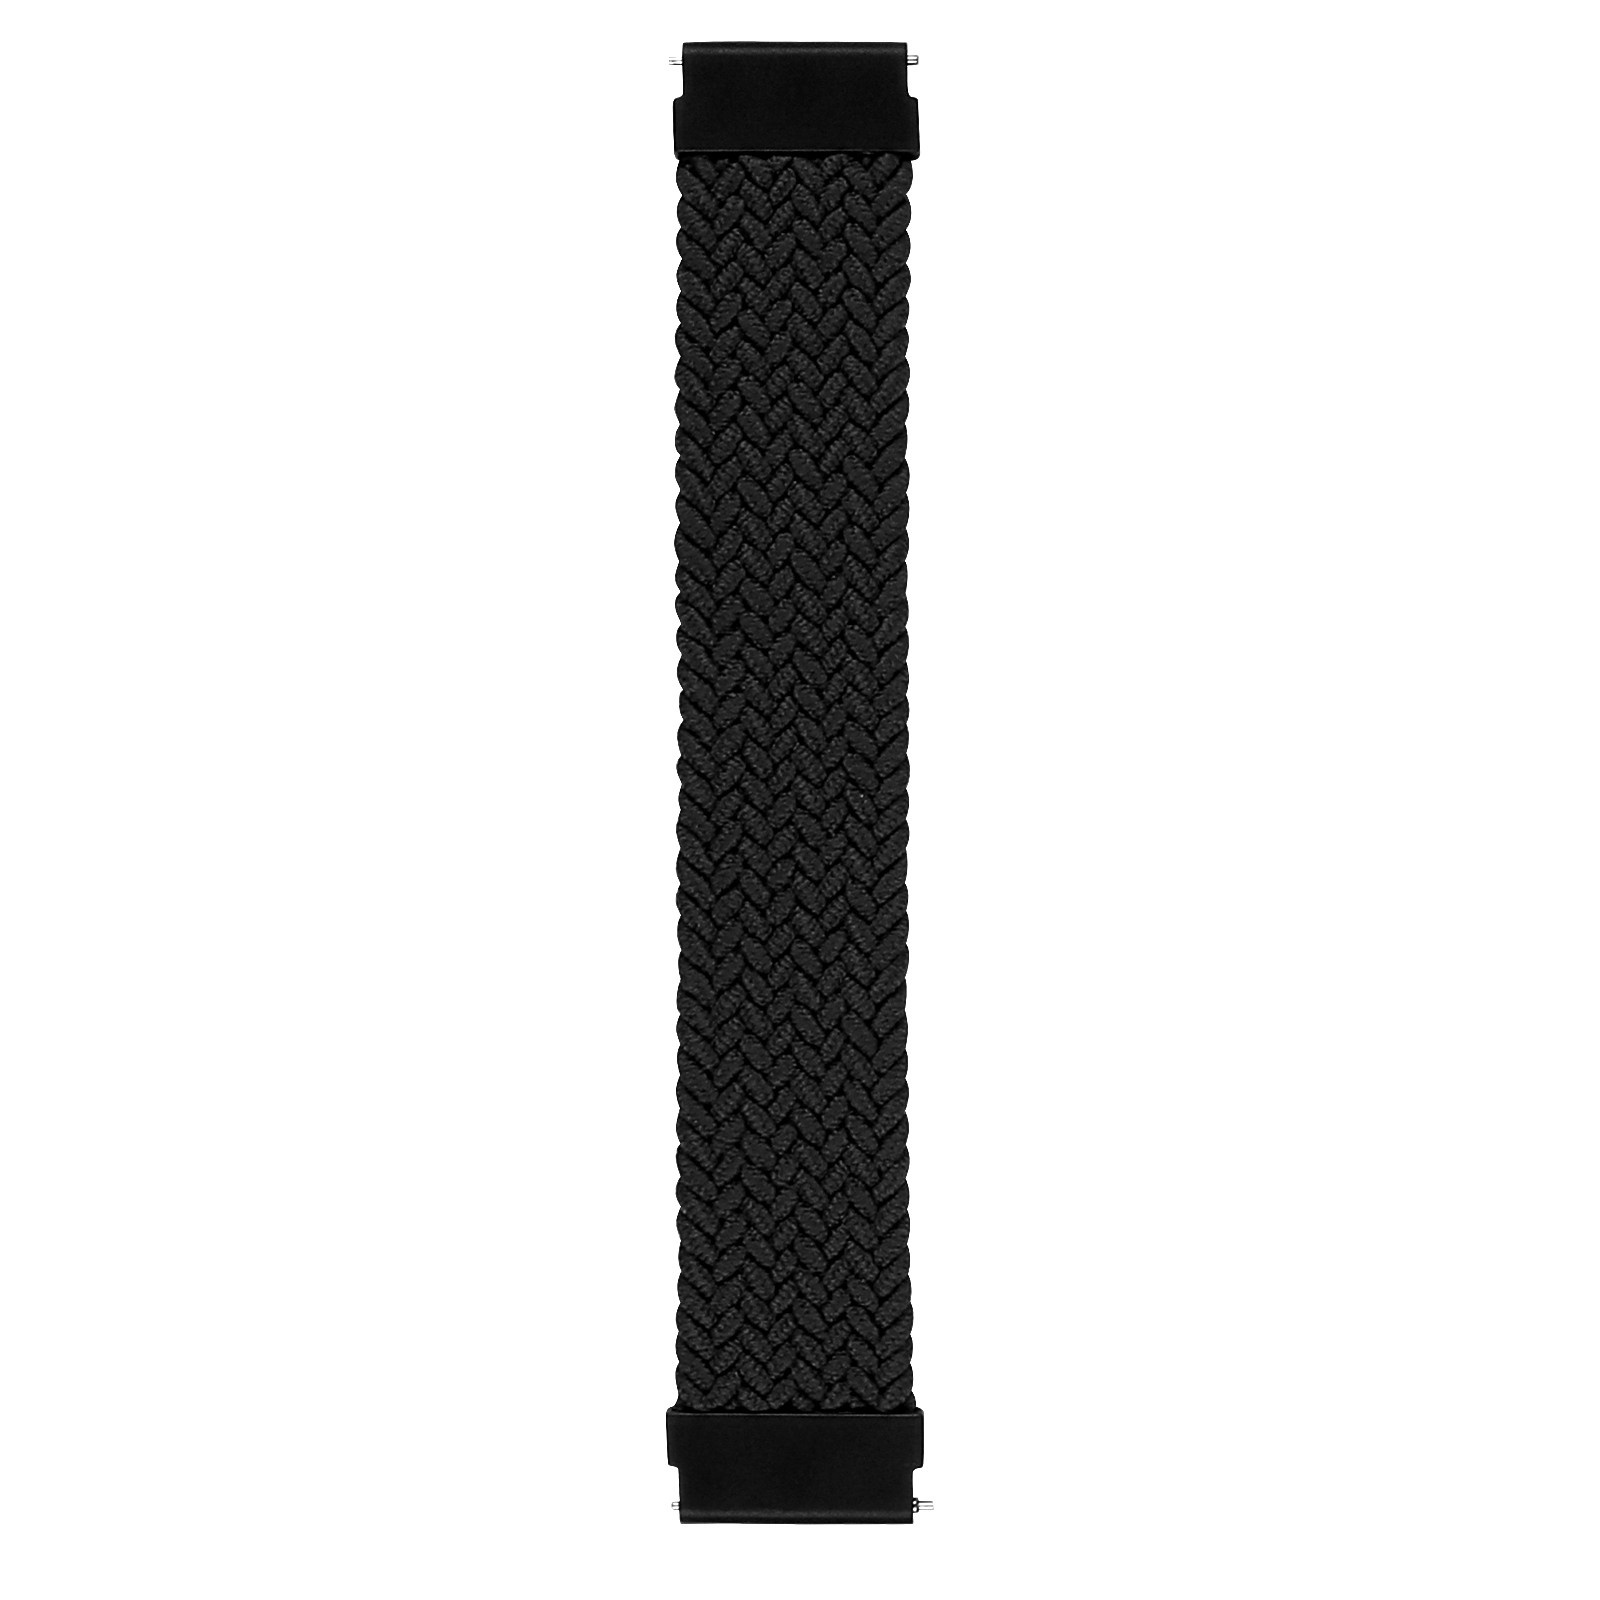 Correa solo loop trenzada de nailon para el Huawei Watch GT - negro